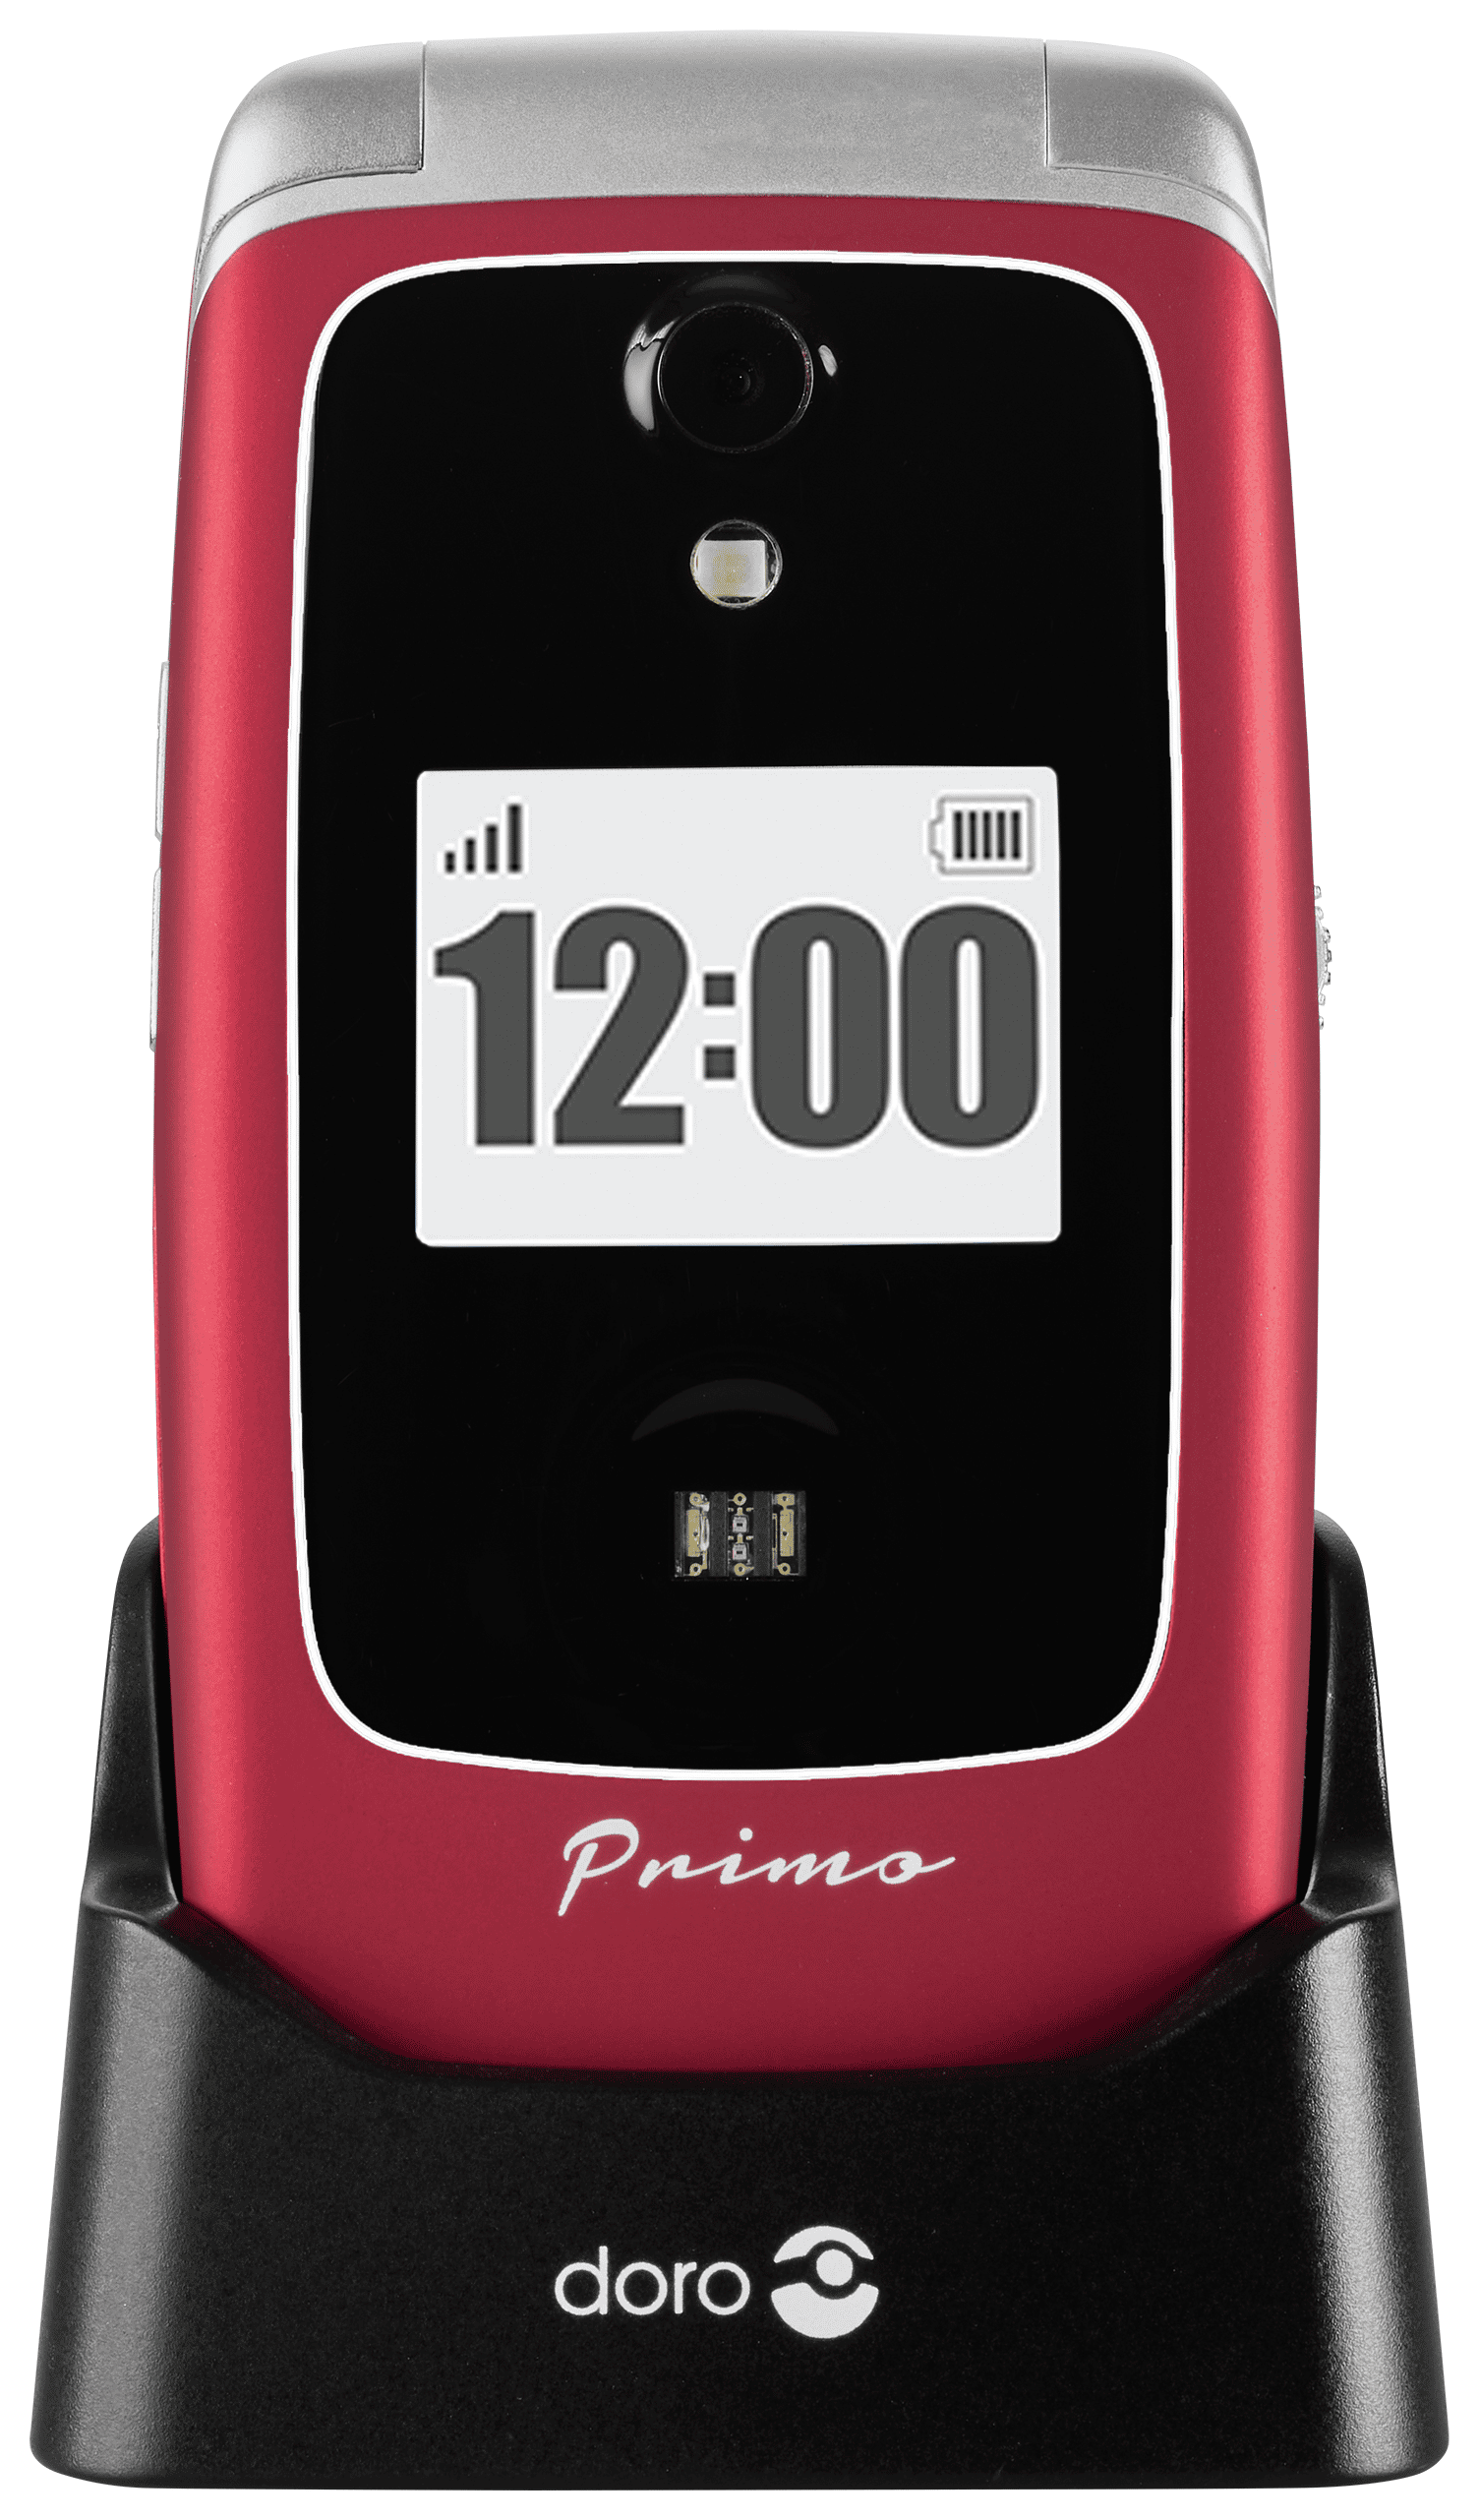 Primo 418 7,11 cm (2.8 MP 2G von Zoll) (Rot) Technomarkt expert Smartphone 3 Doro